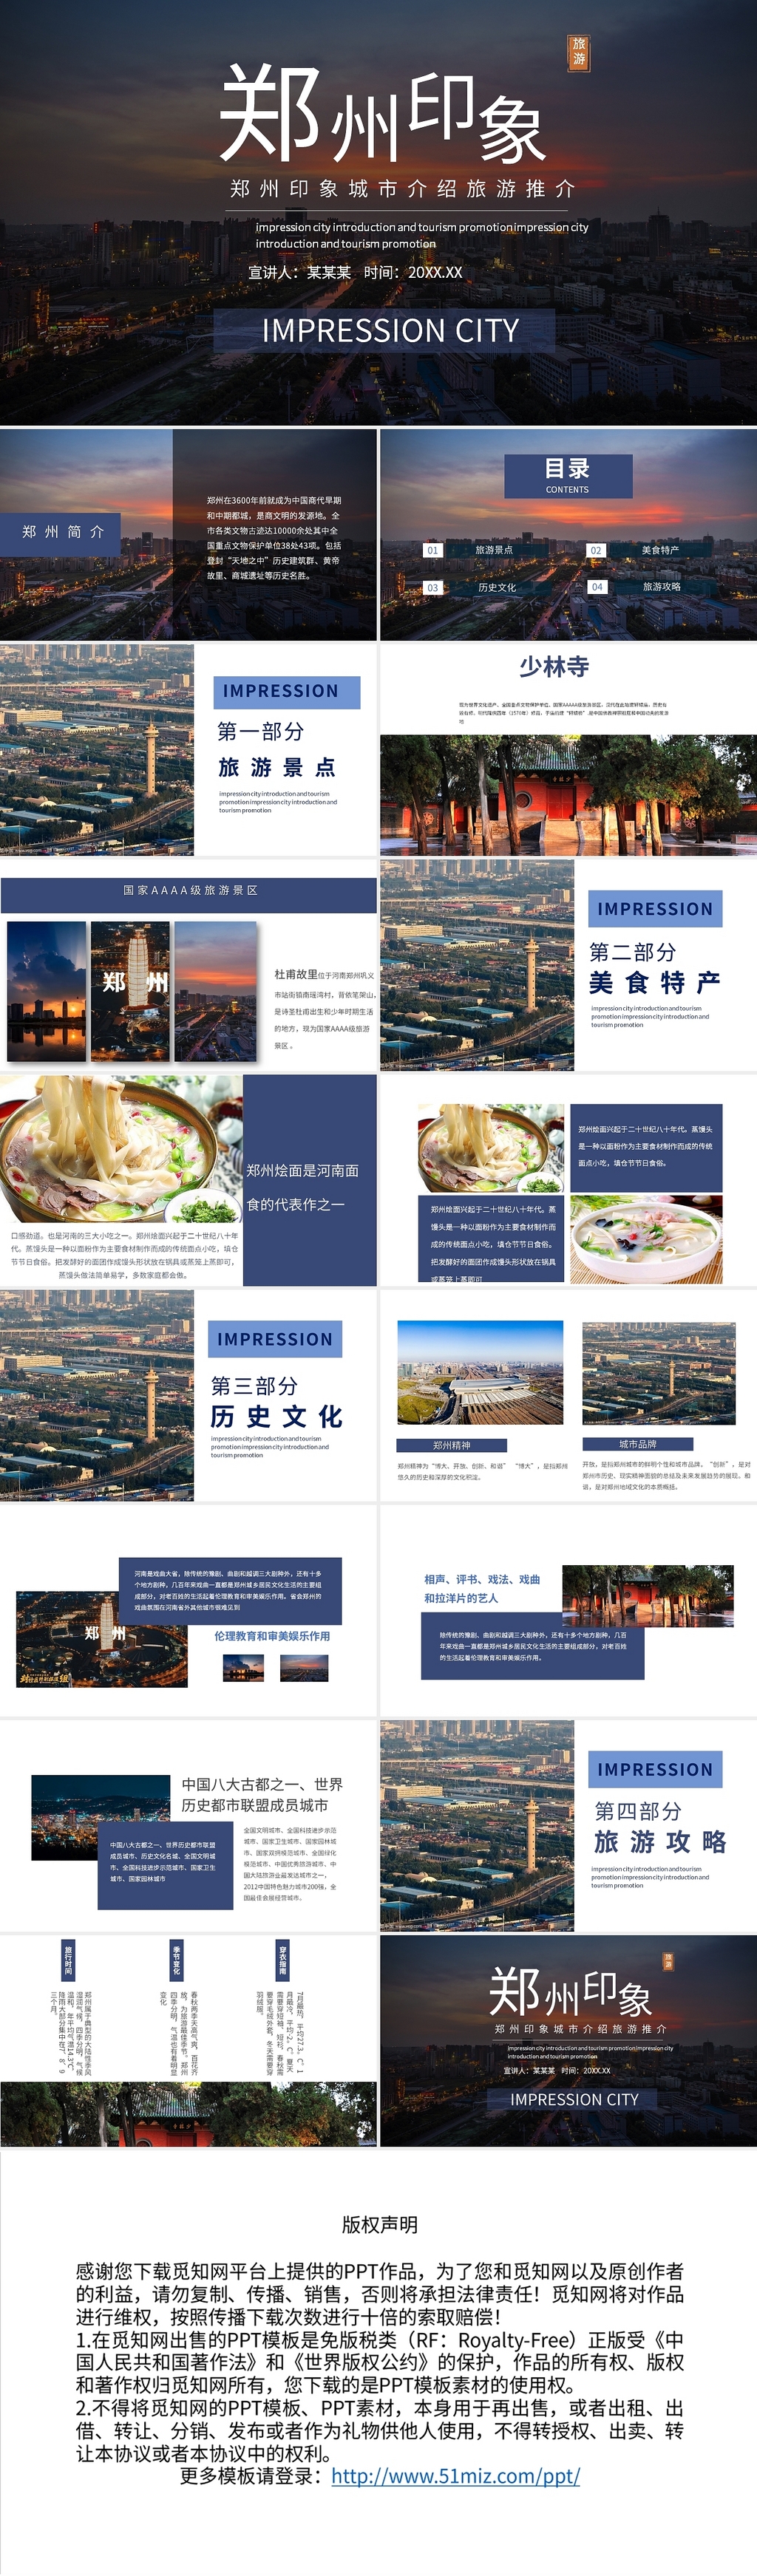 暗黑蓝色商务风郑州印象旅游PPT模板郑州印象城市介绍